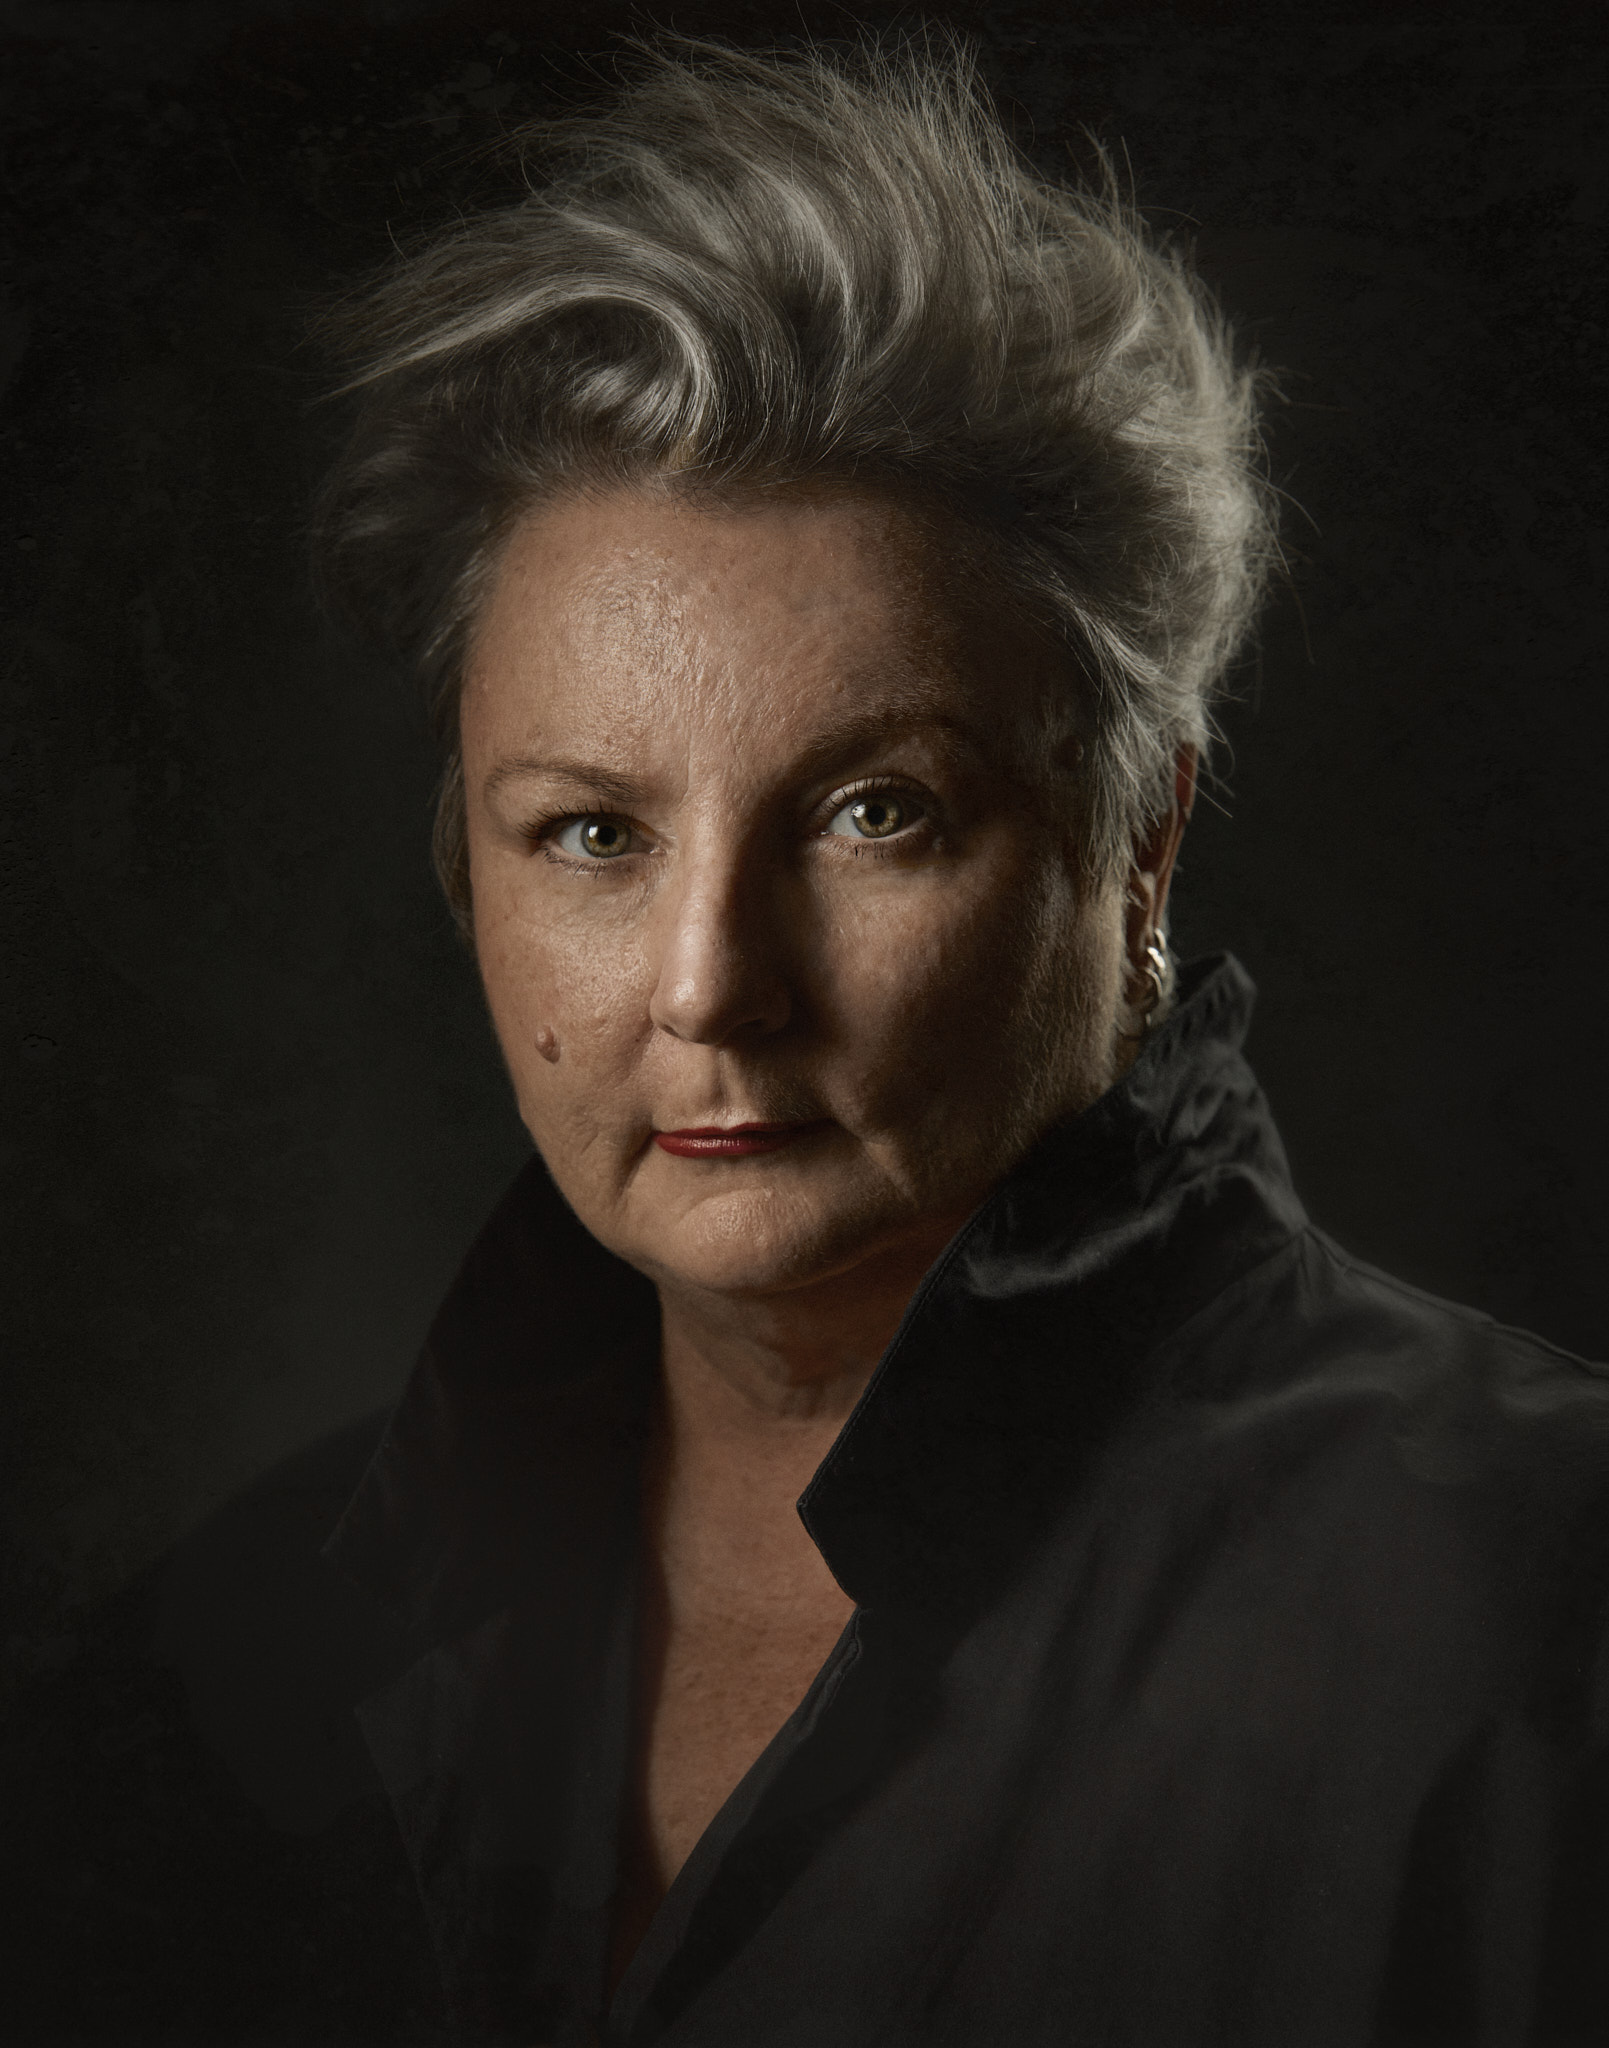 Amanda Waschevski, Ipswich Portraitist